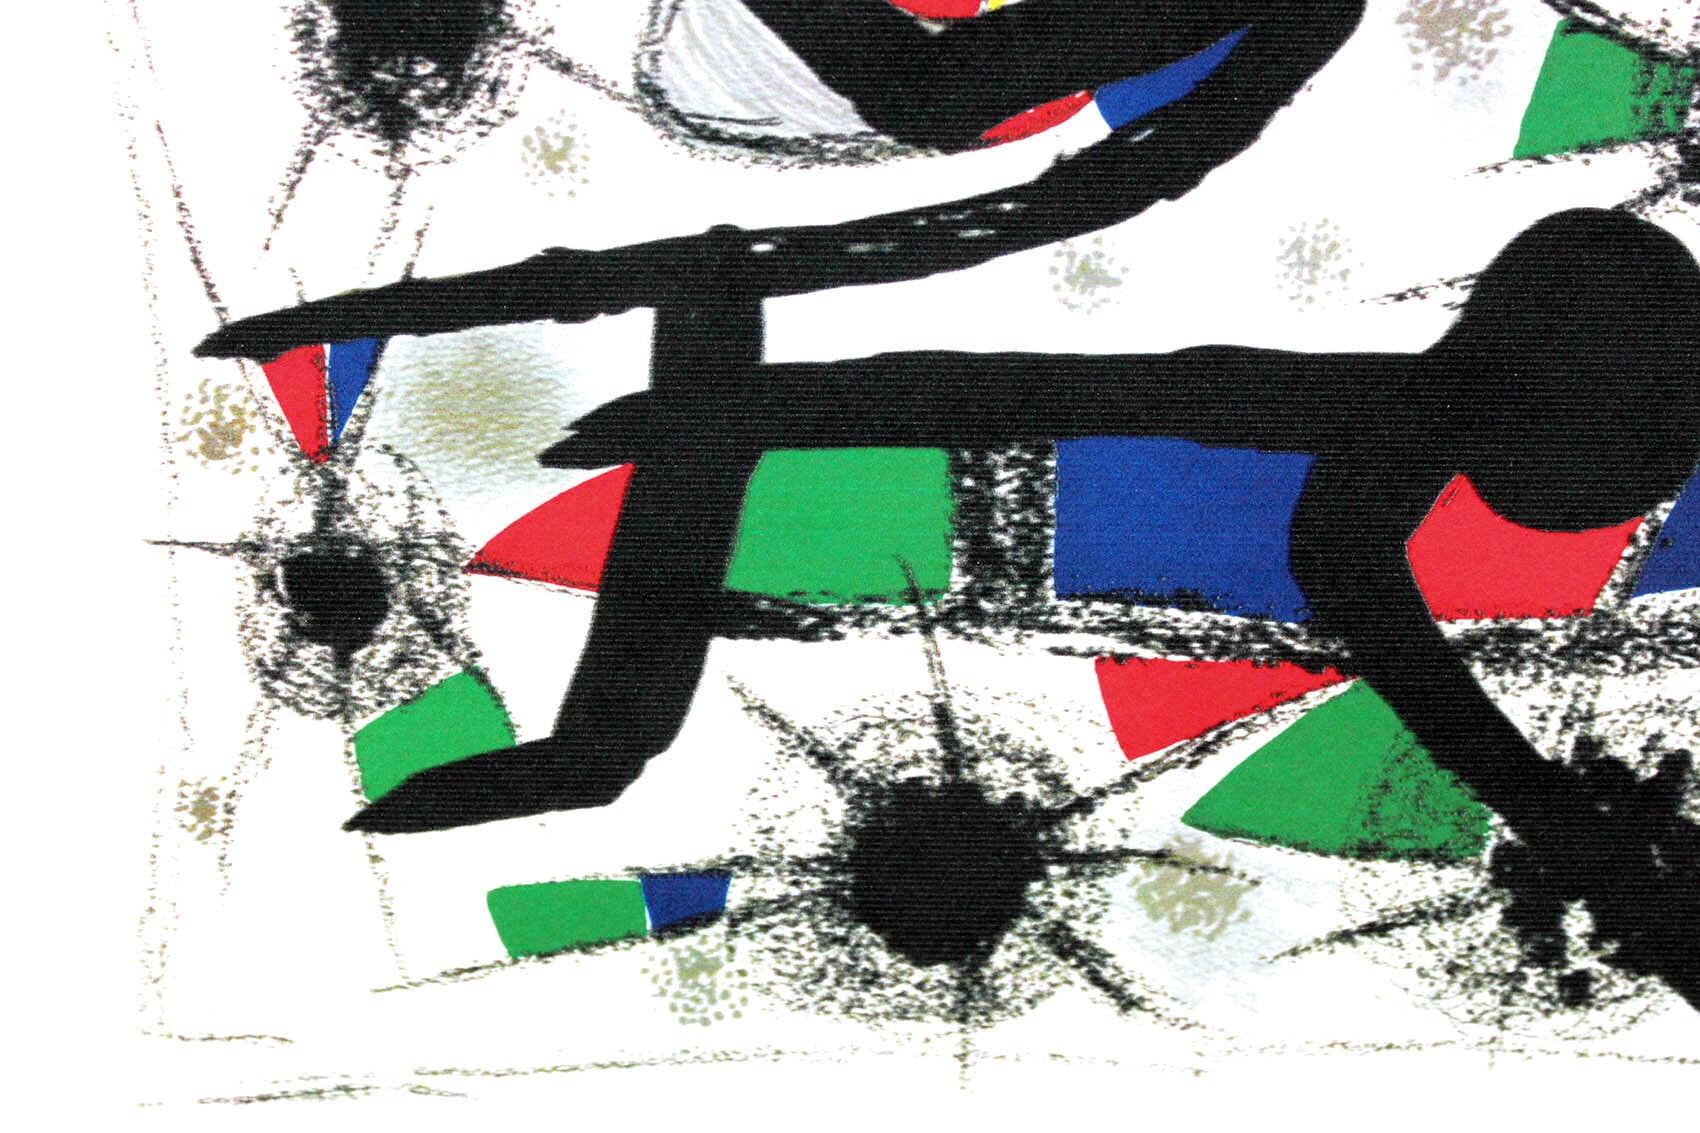 ジョアン・ミロ「ポエジーの絵画」作品証明書・展示用フック・限定500部エディション付複製画リトグラフ